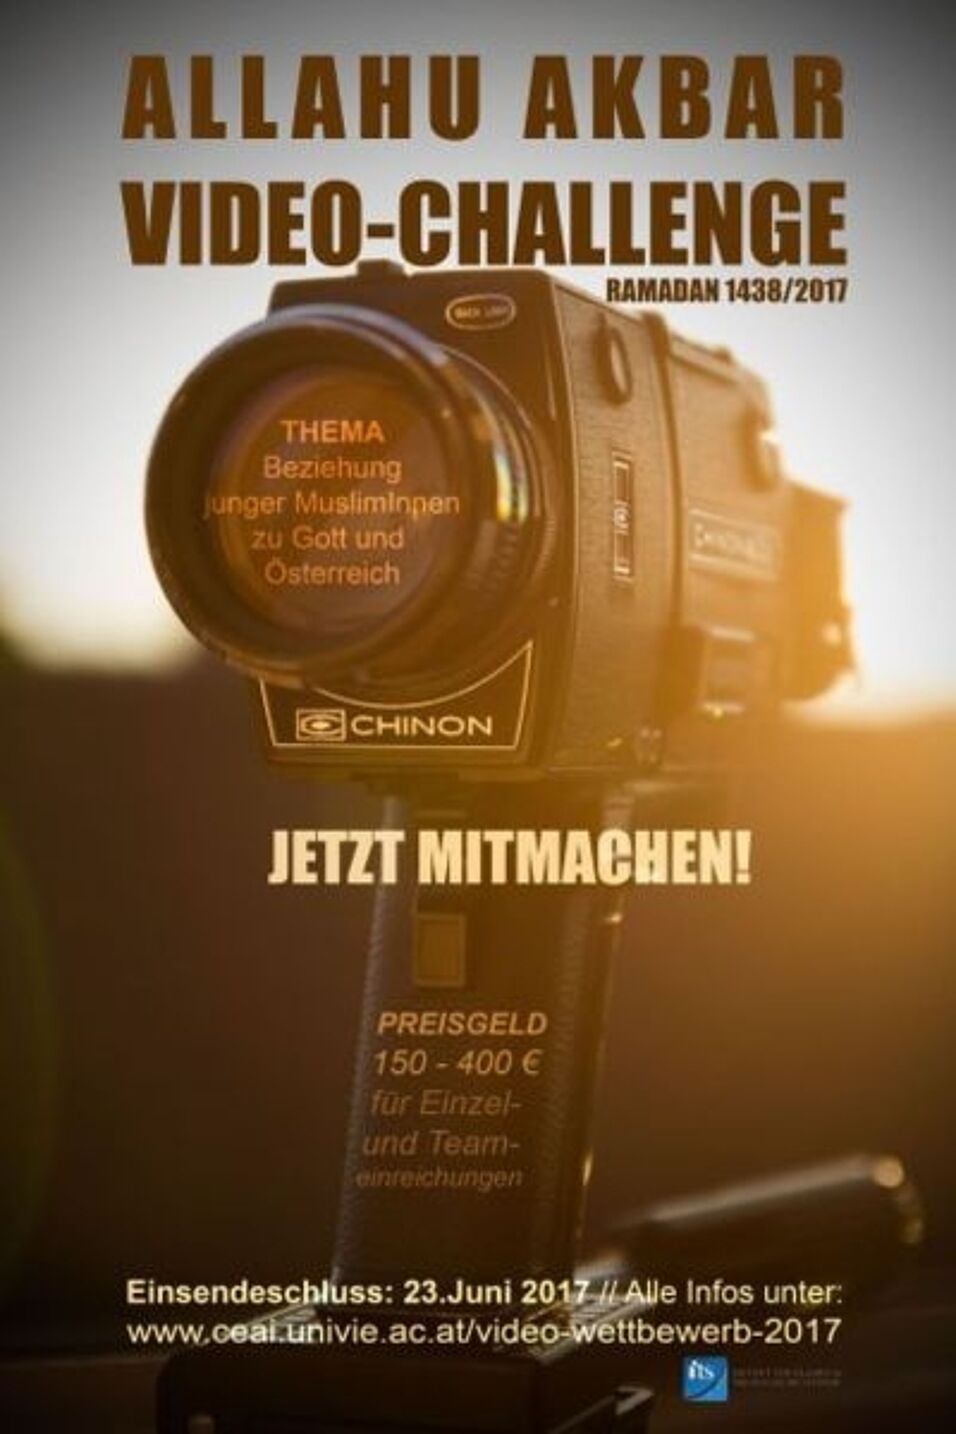 Vergrößern in neuem Tab. Plakat mit Foto einer Videokamera vor einem Sonnenuntergang; darauf Informationen zur Challenge